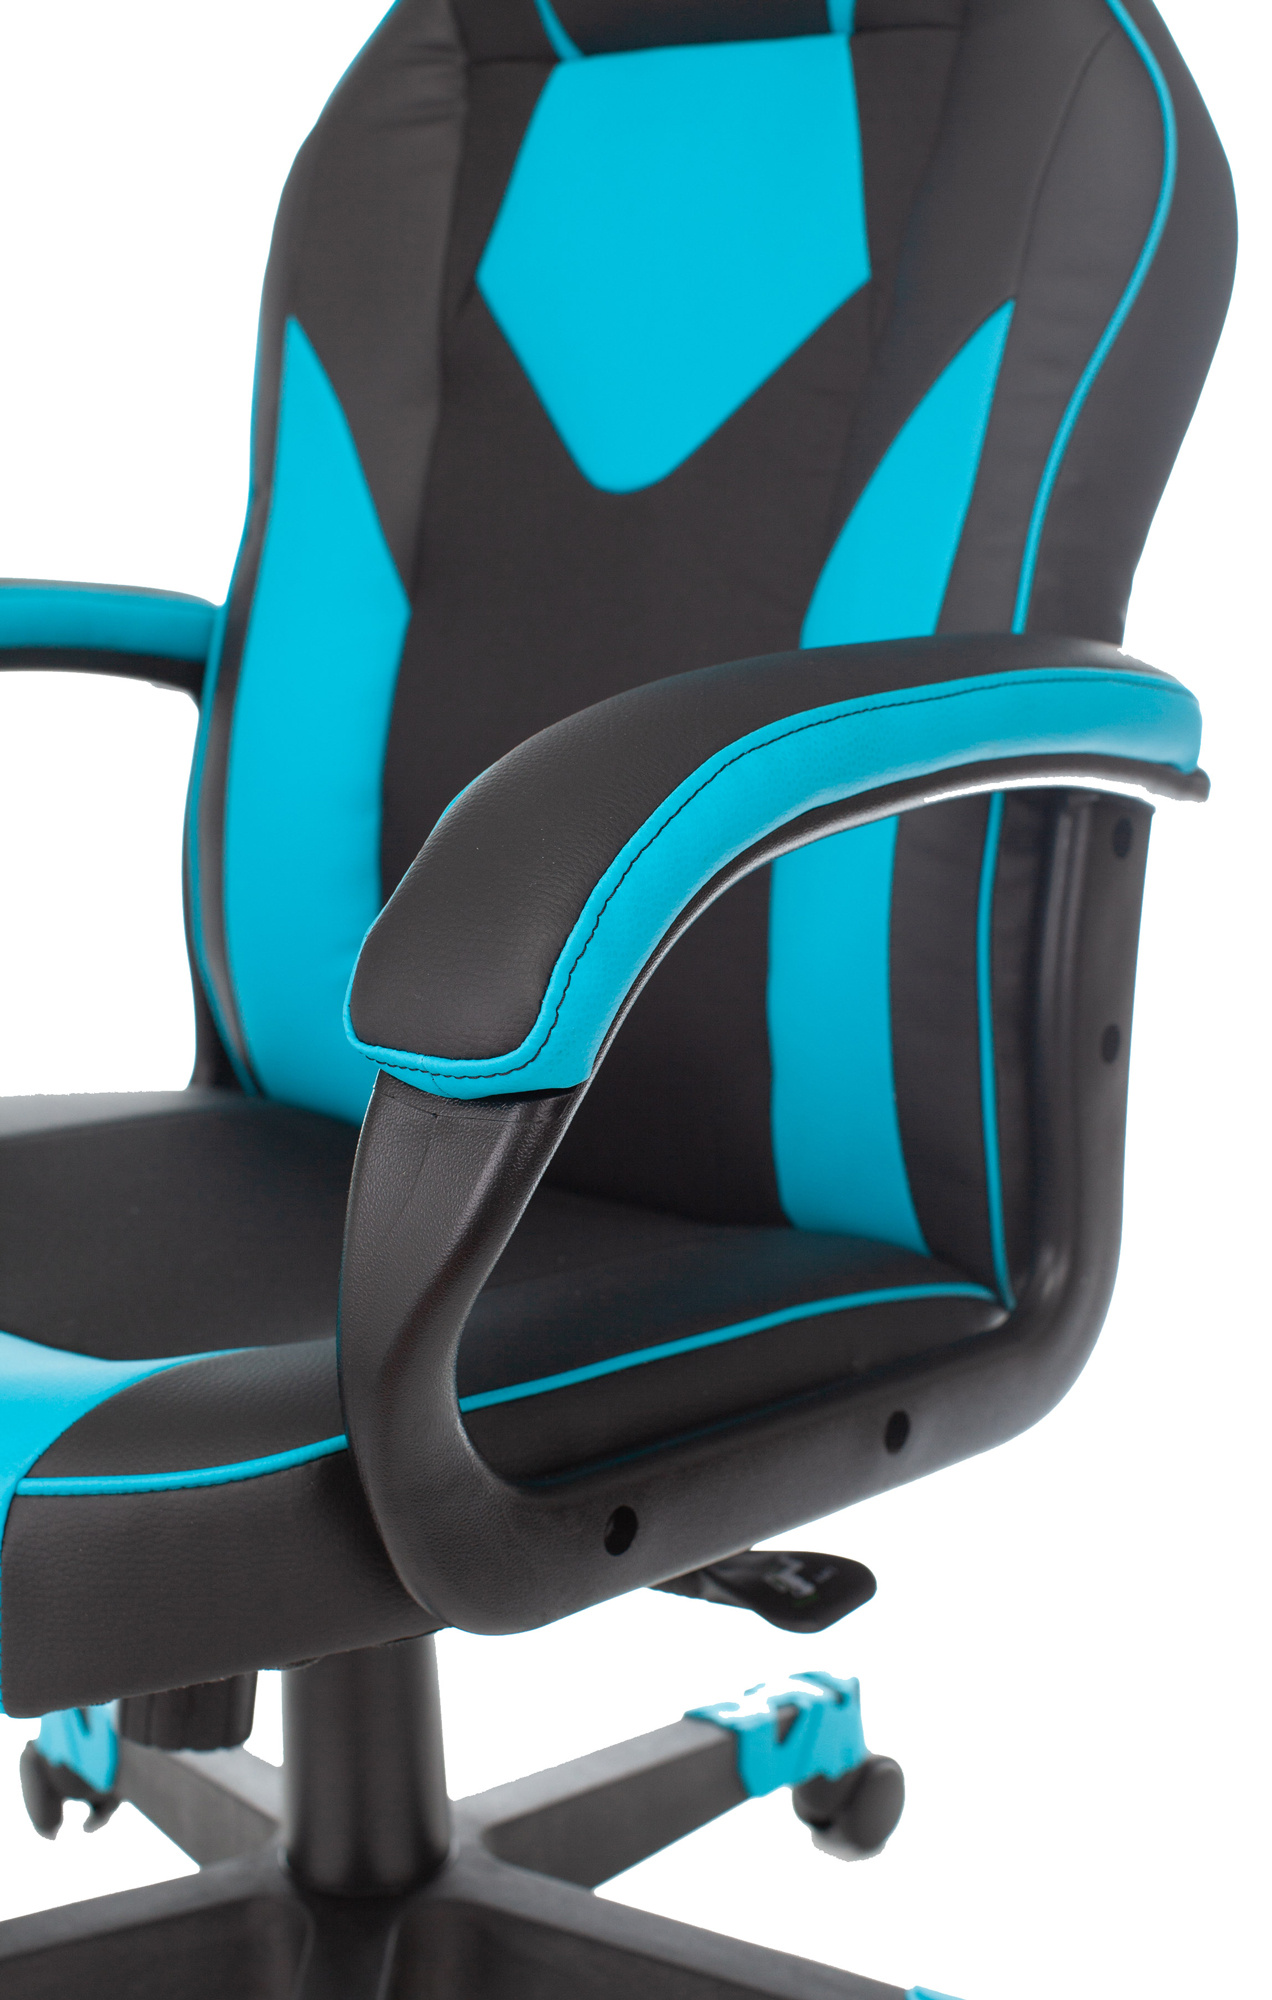 Кресло игровое Zombie GAME 17 черный/синий текстиль/эко.кожа крестов. пластик